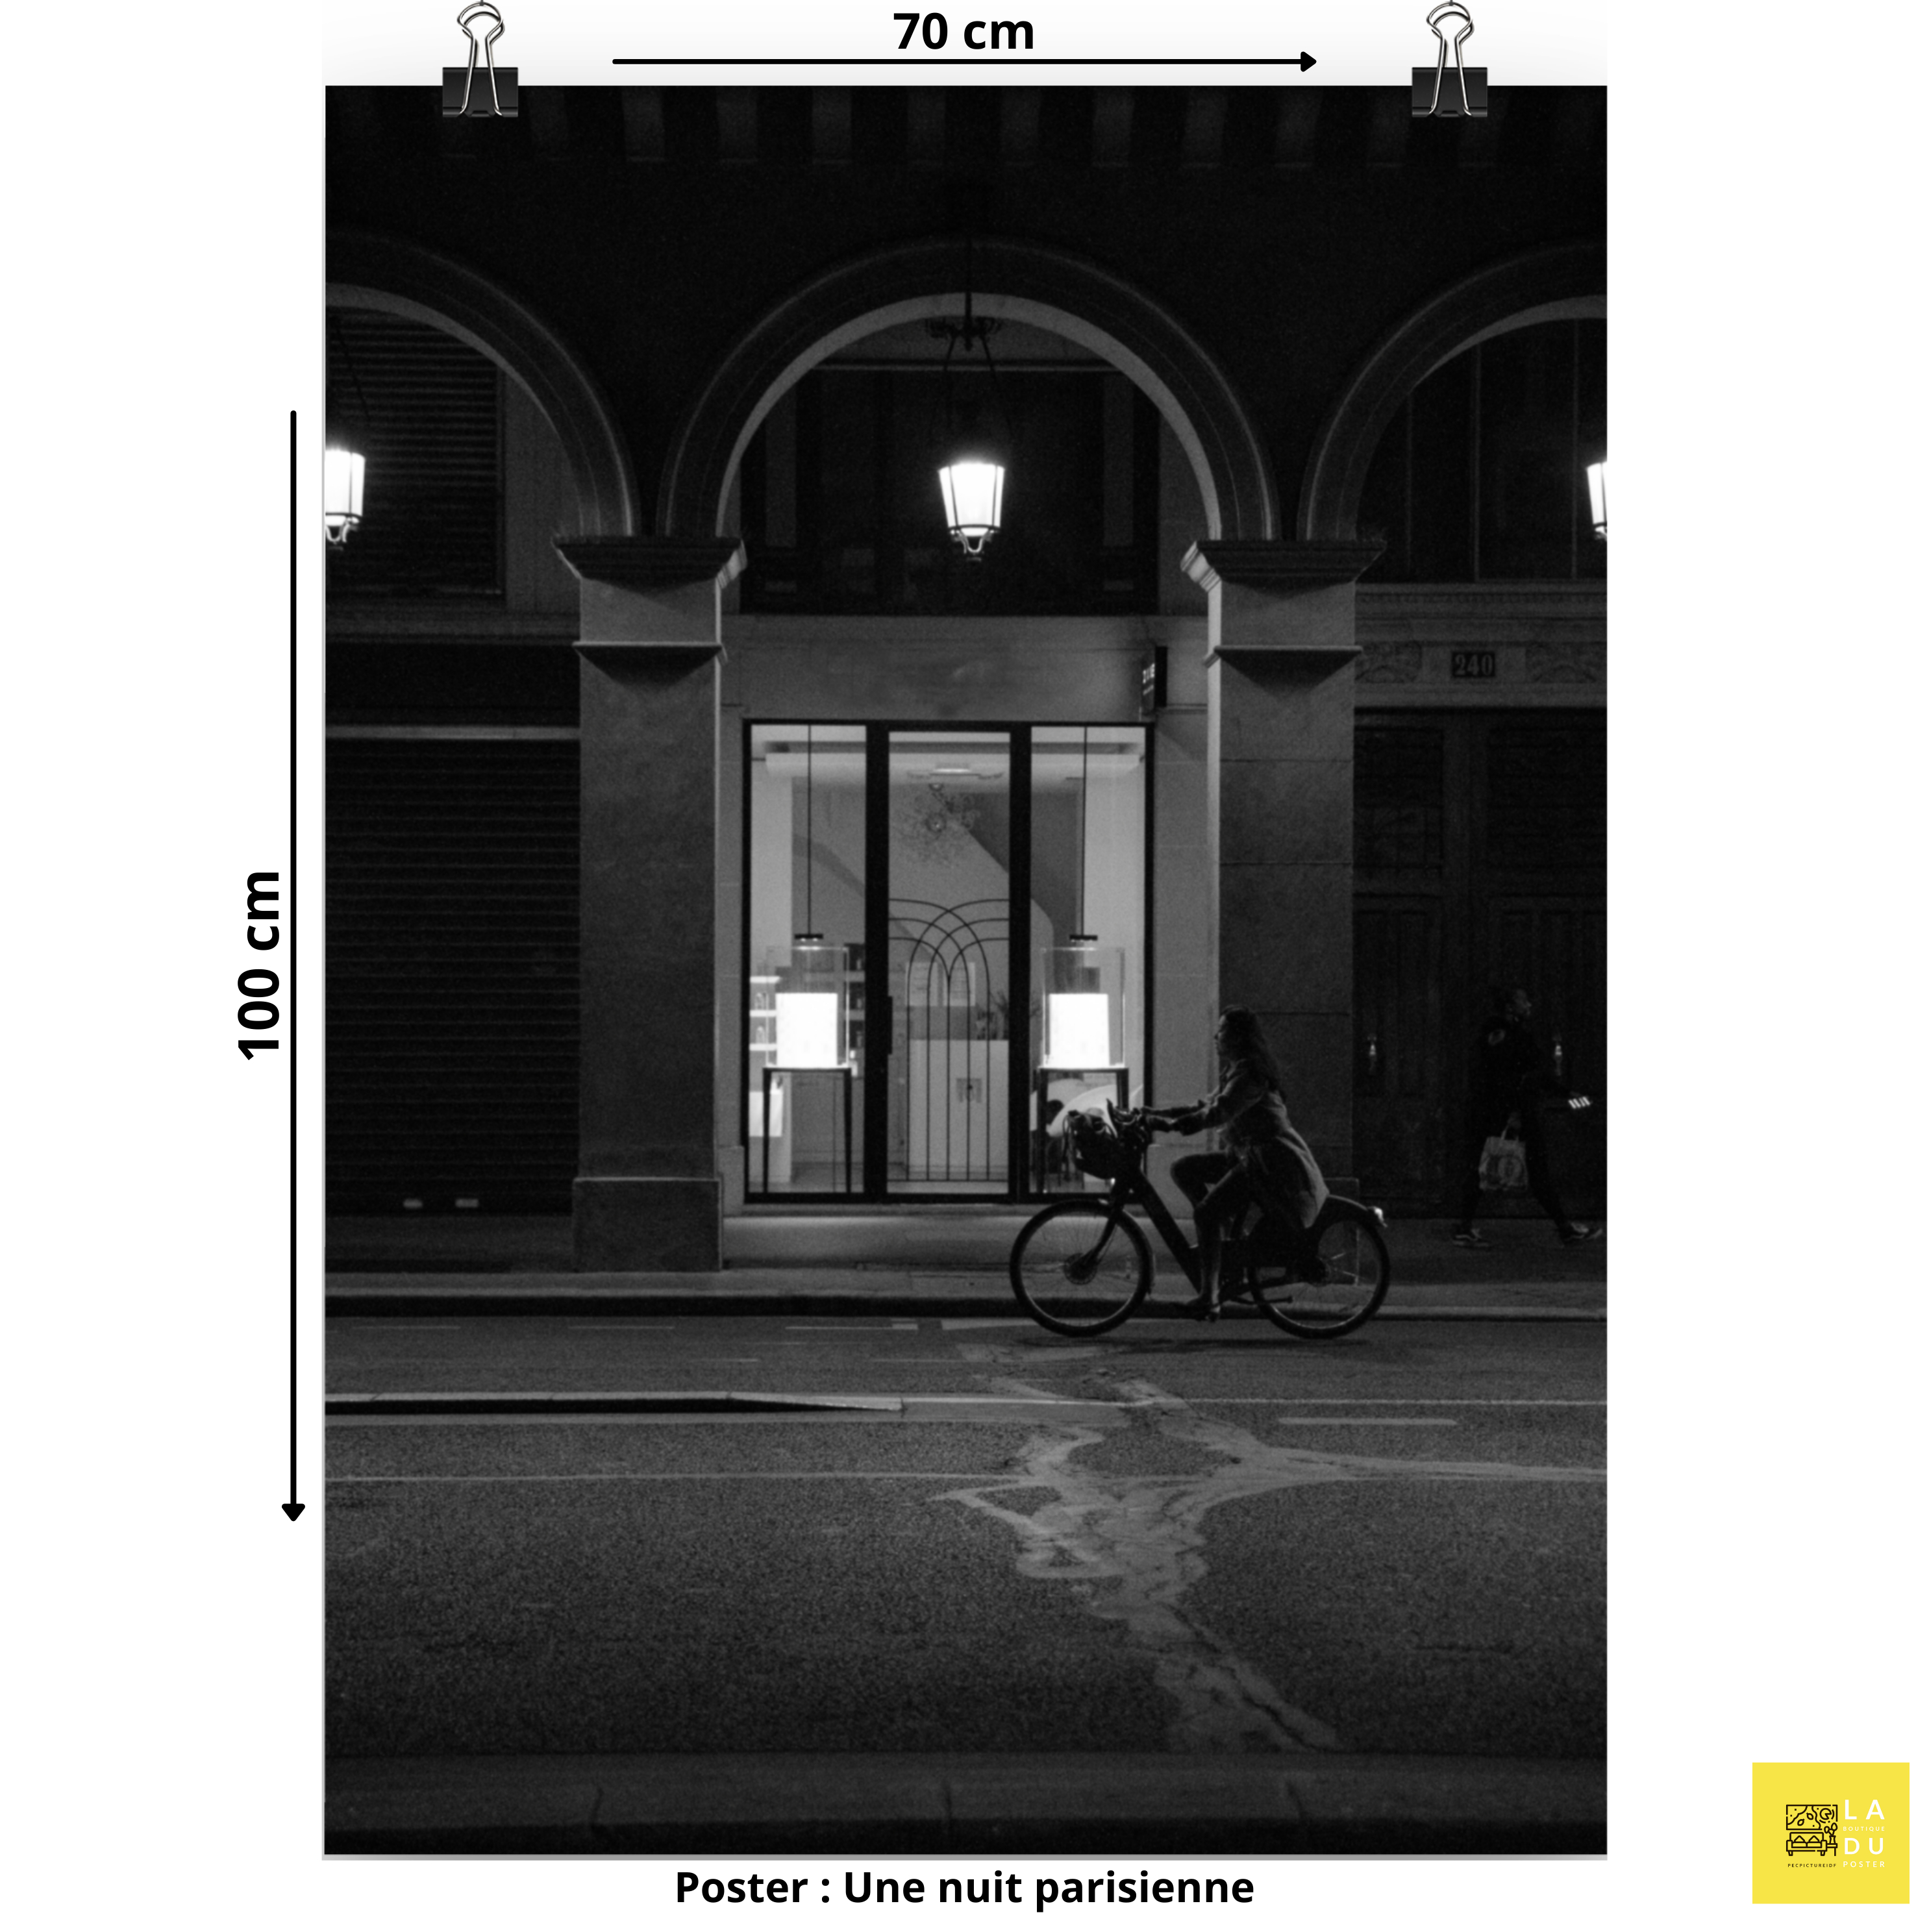 Une nuit parisienne - Poster - La boutique du poster Français